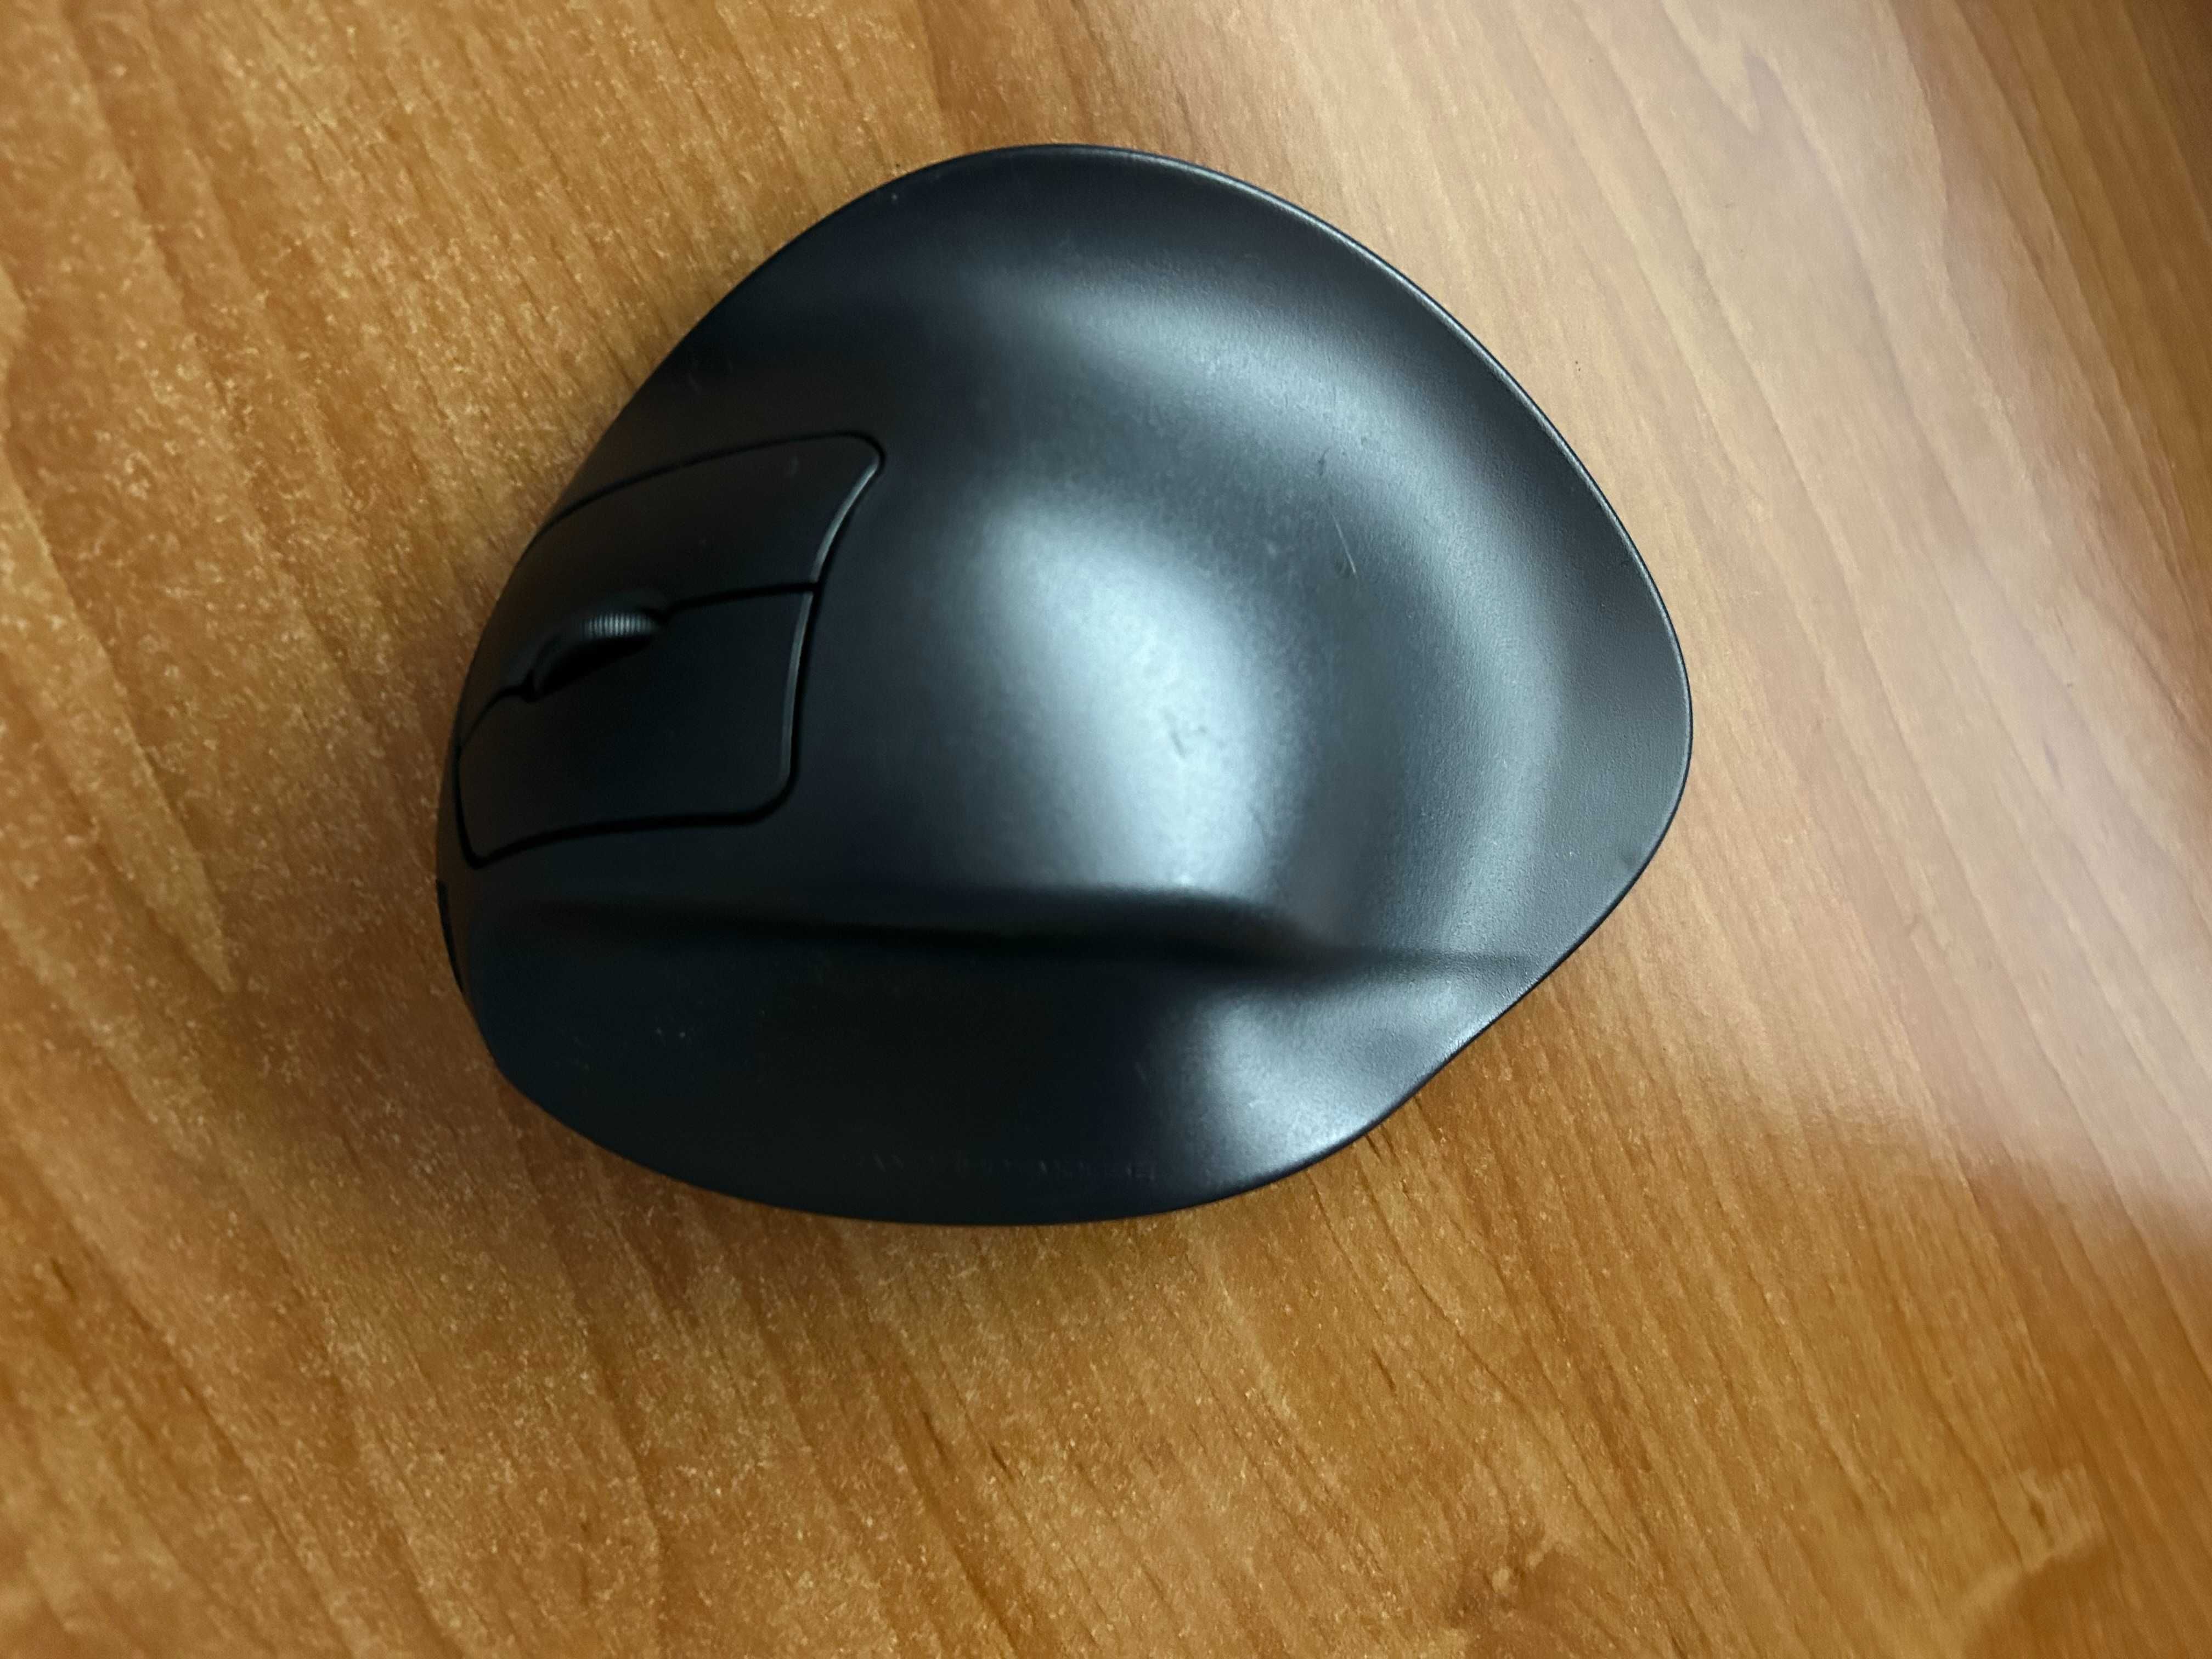 Myszka komputerowa przewodowa Hippus HandShoe Mouse M2WB ergonomiczna